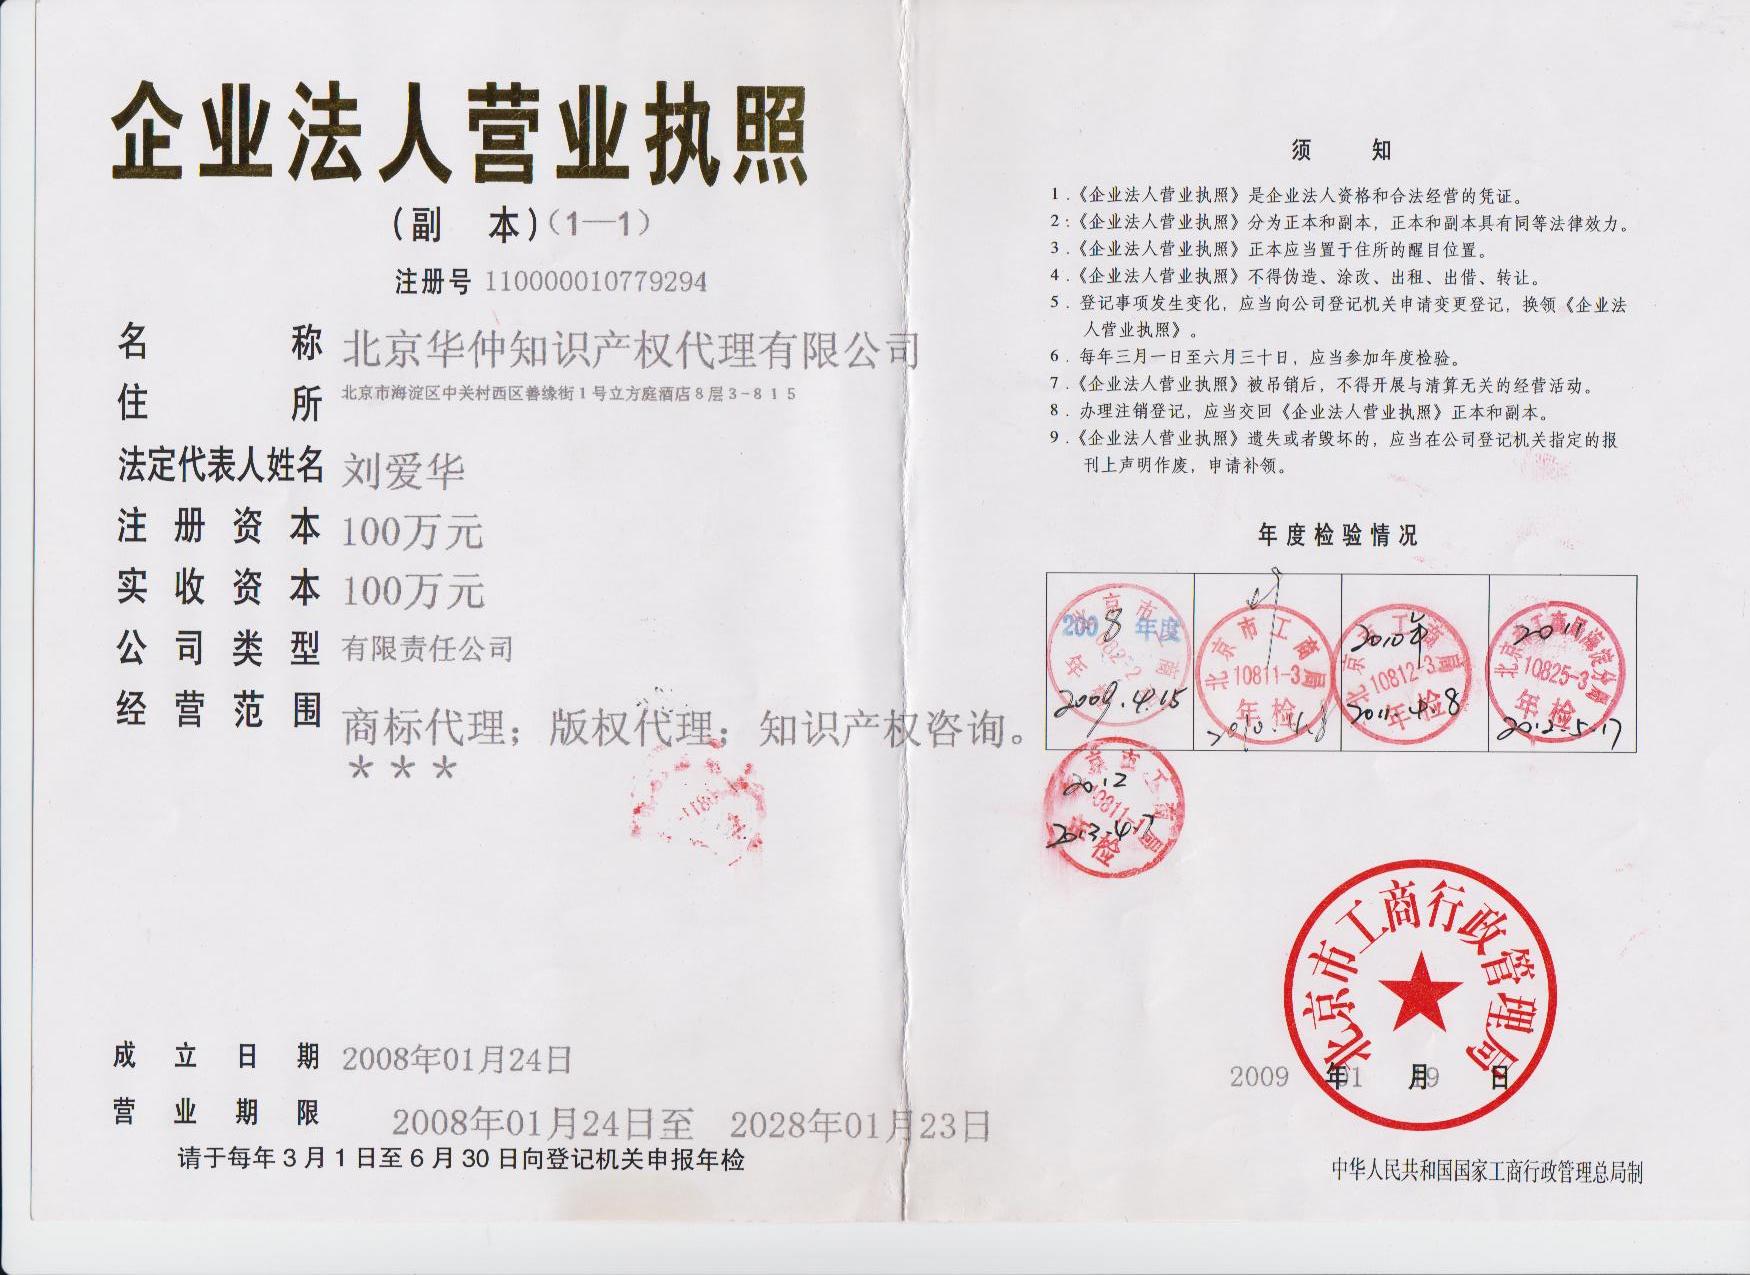 专利申请 北京专业代理服务